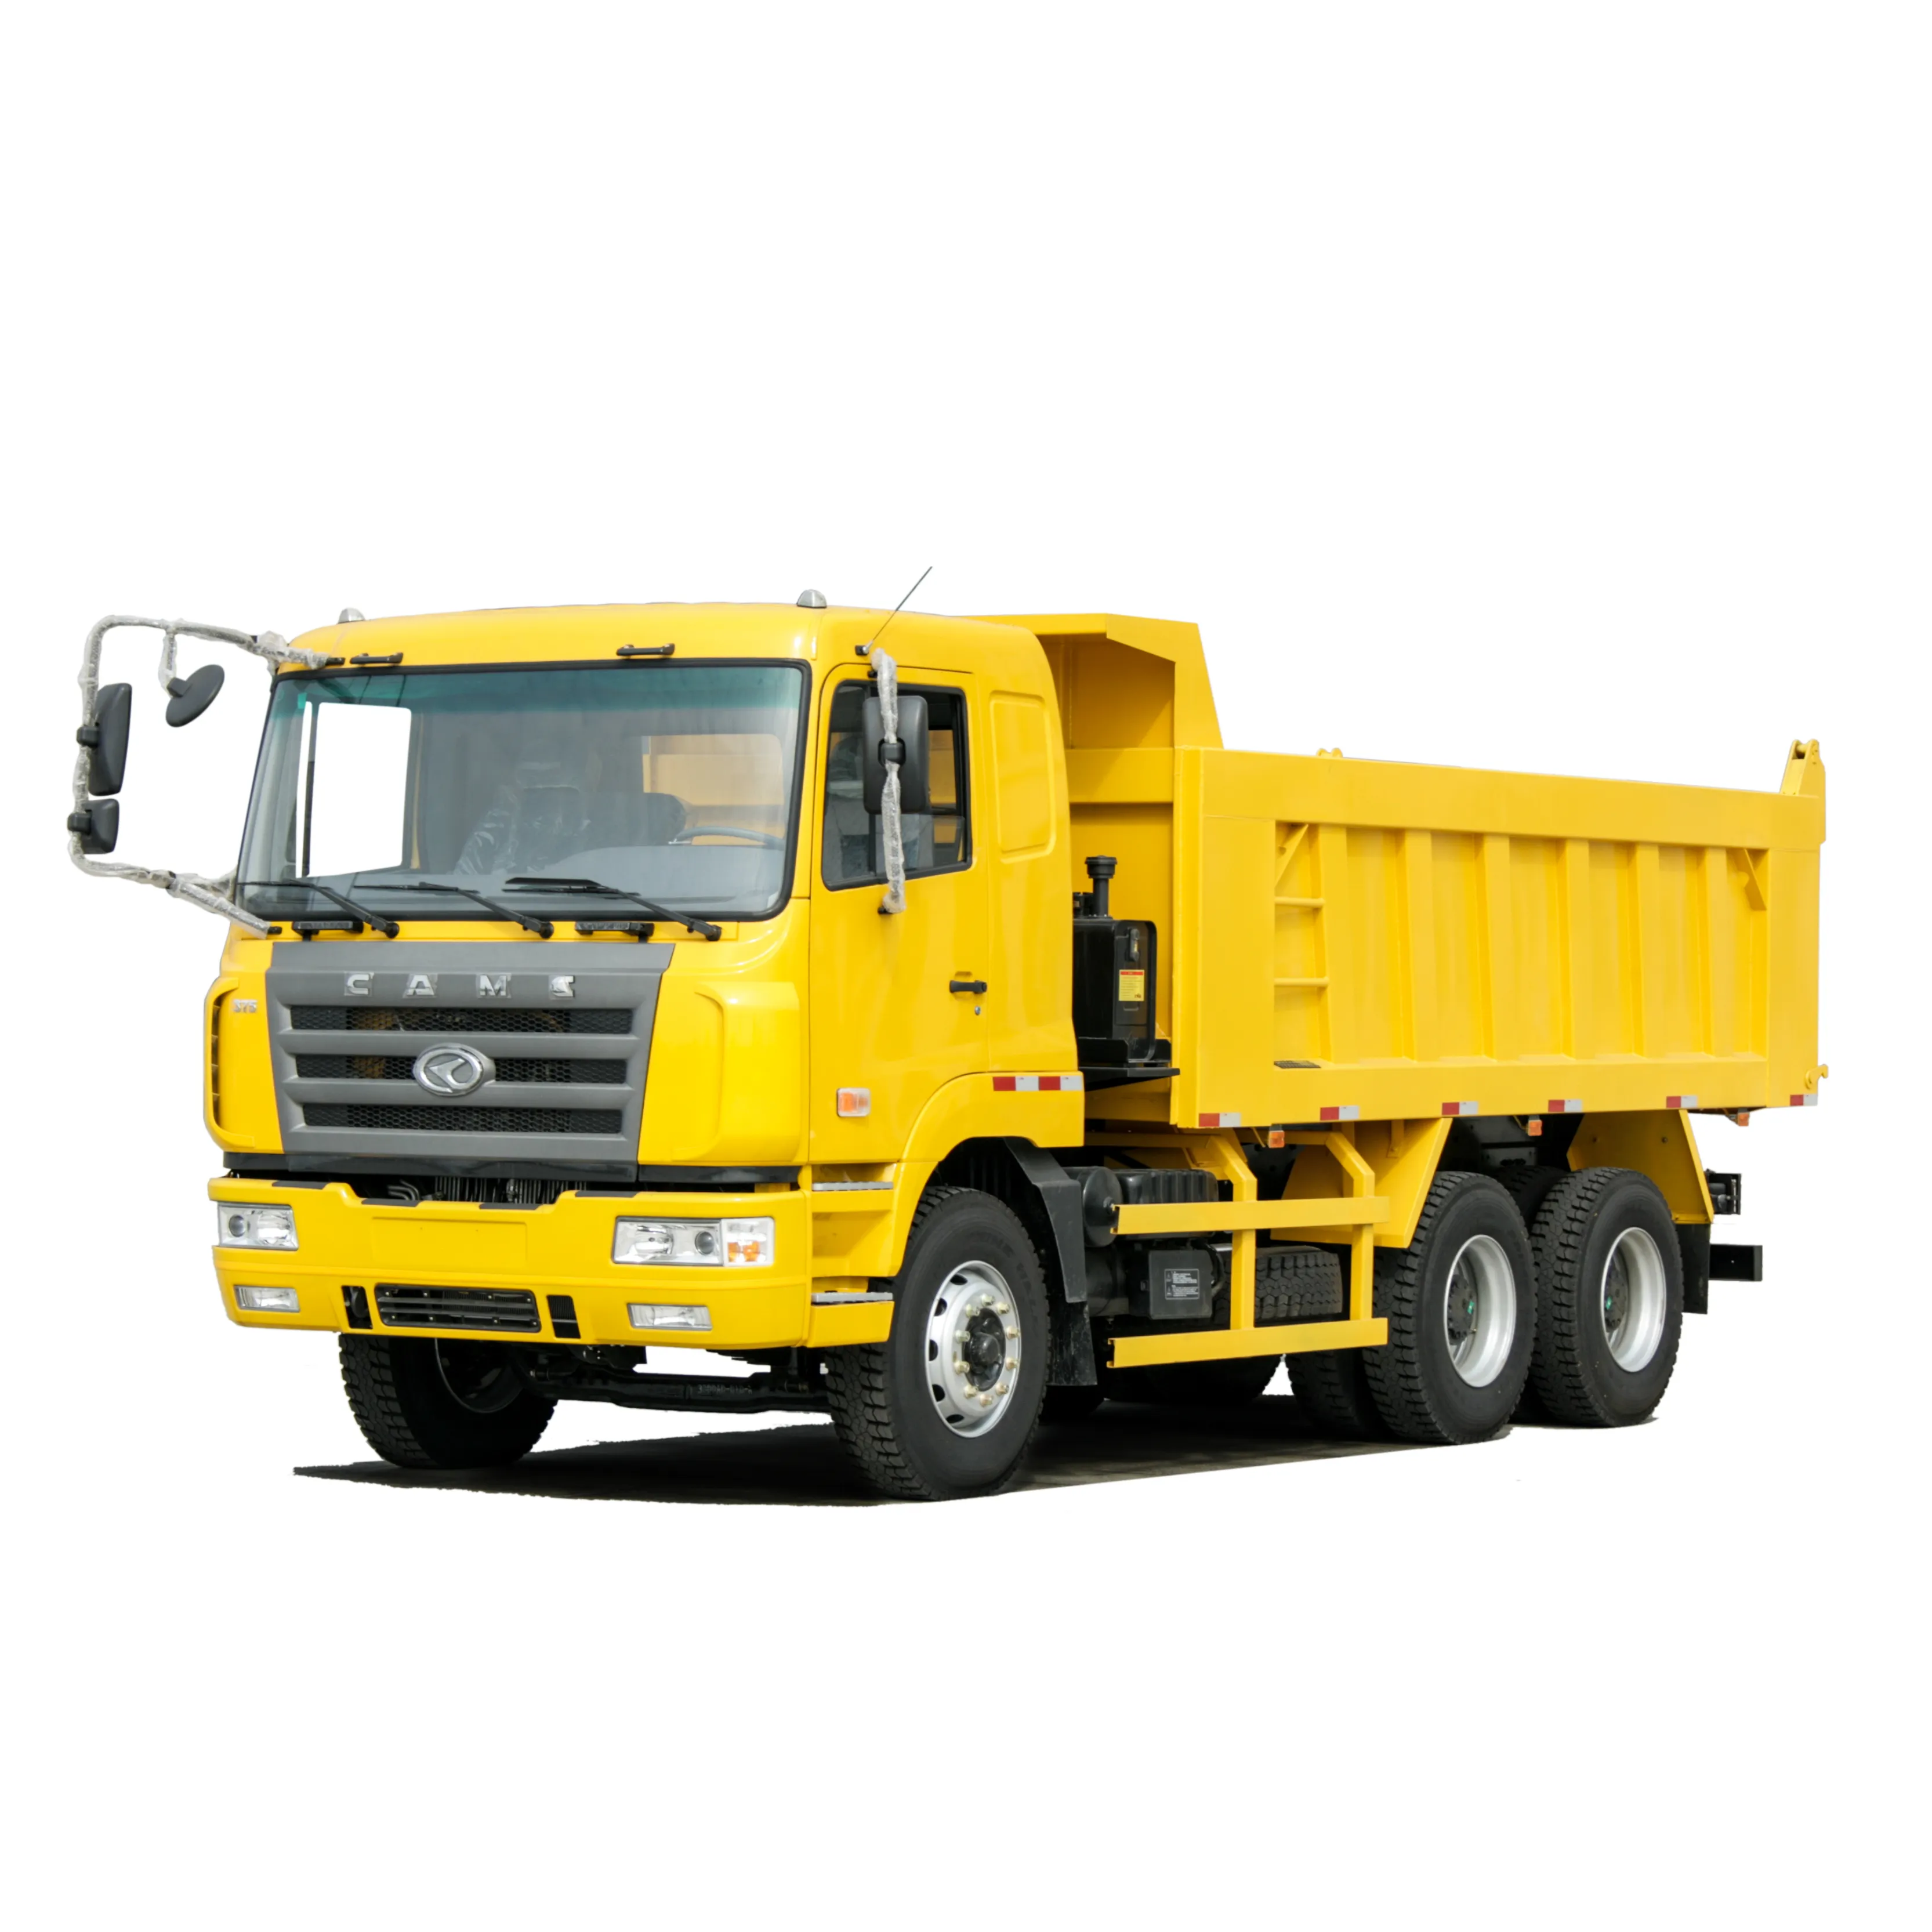 HAODE camion howo CAMC 21 - 30T 6X4 טיפר משאית משליך מיני כריית משאית מזבלה למכירה camion דה לה basura